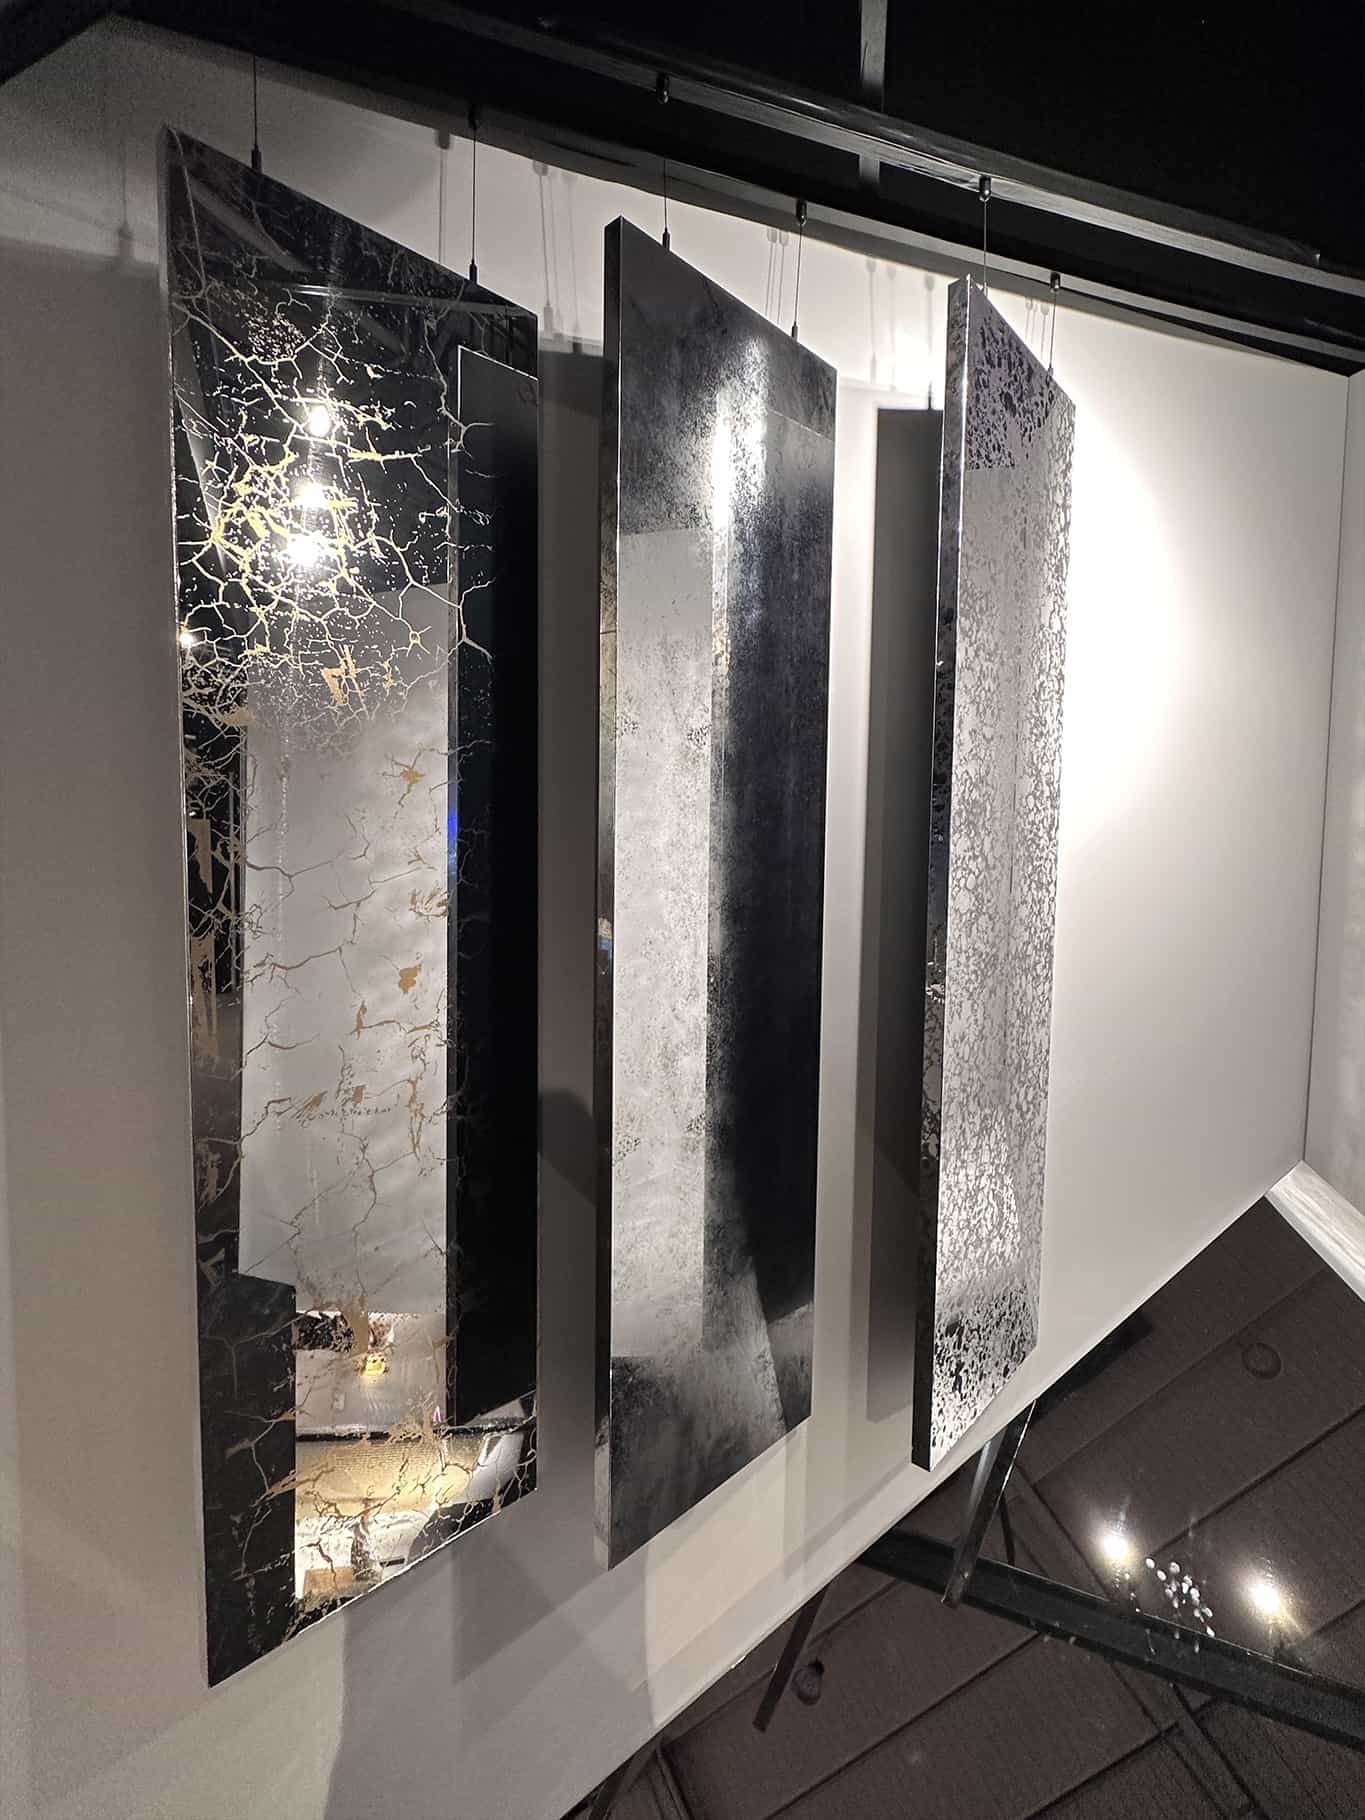 Stand Like Mirror à Architect@Work avec les trois nouveaux motifs de miroirs tendus effet vieilli : Miroir Saturne, Miroir Meteor et Miroir Marbre Dorée